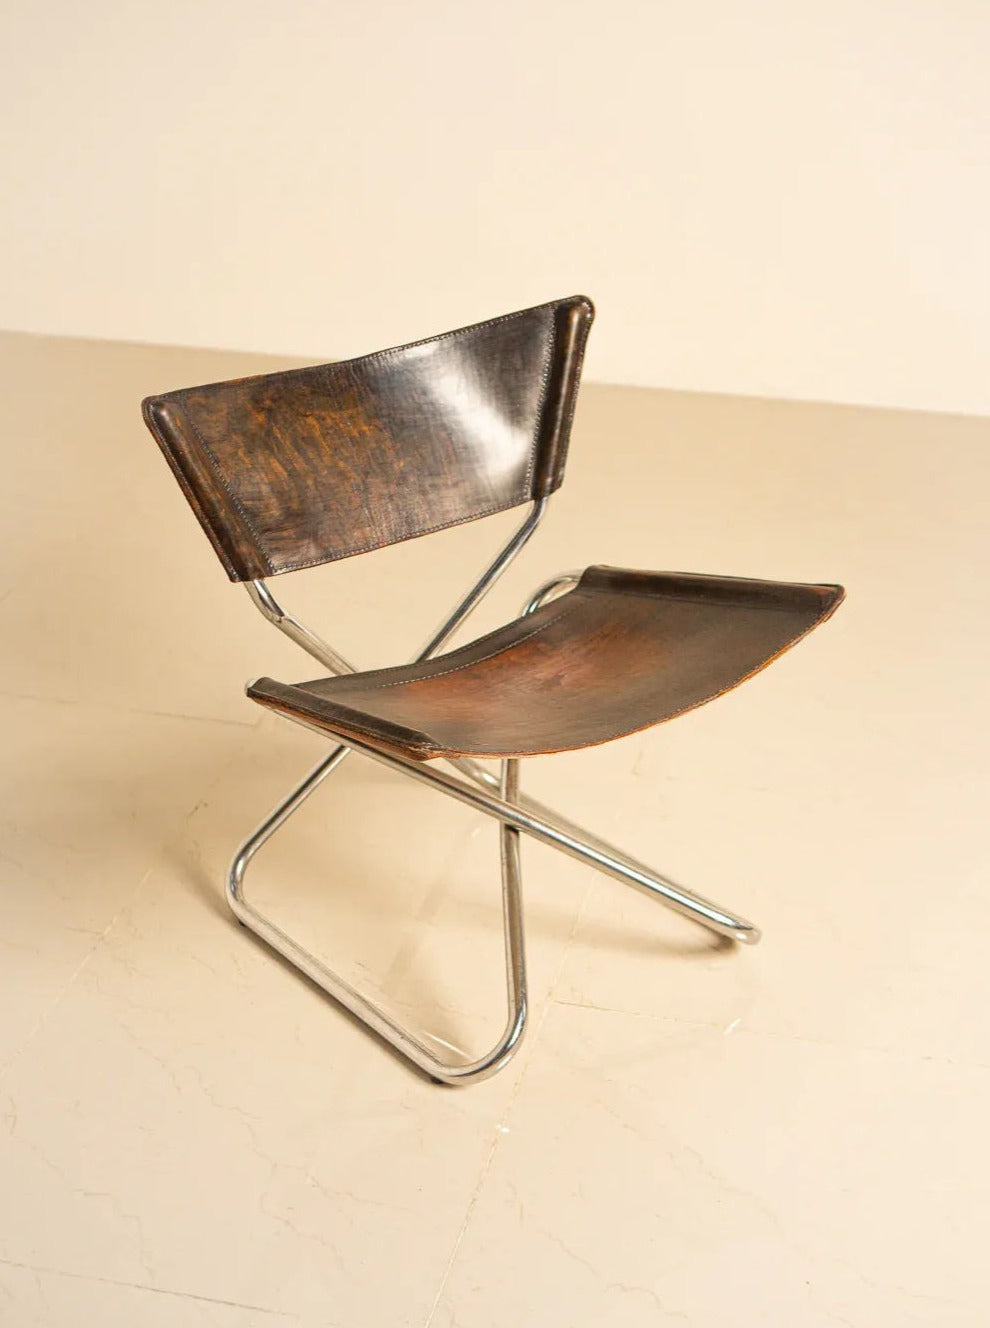 'Z' Chair by Erik Magnusson for Torben Ørskov 60's